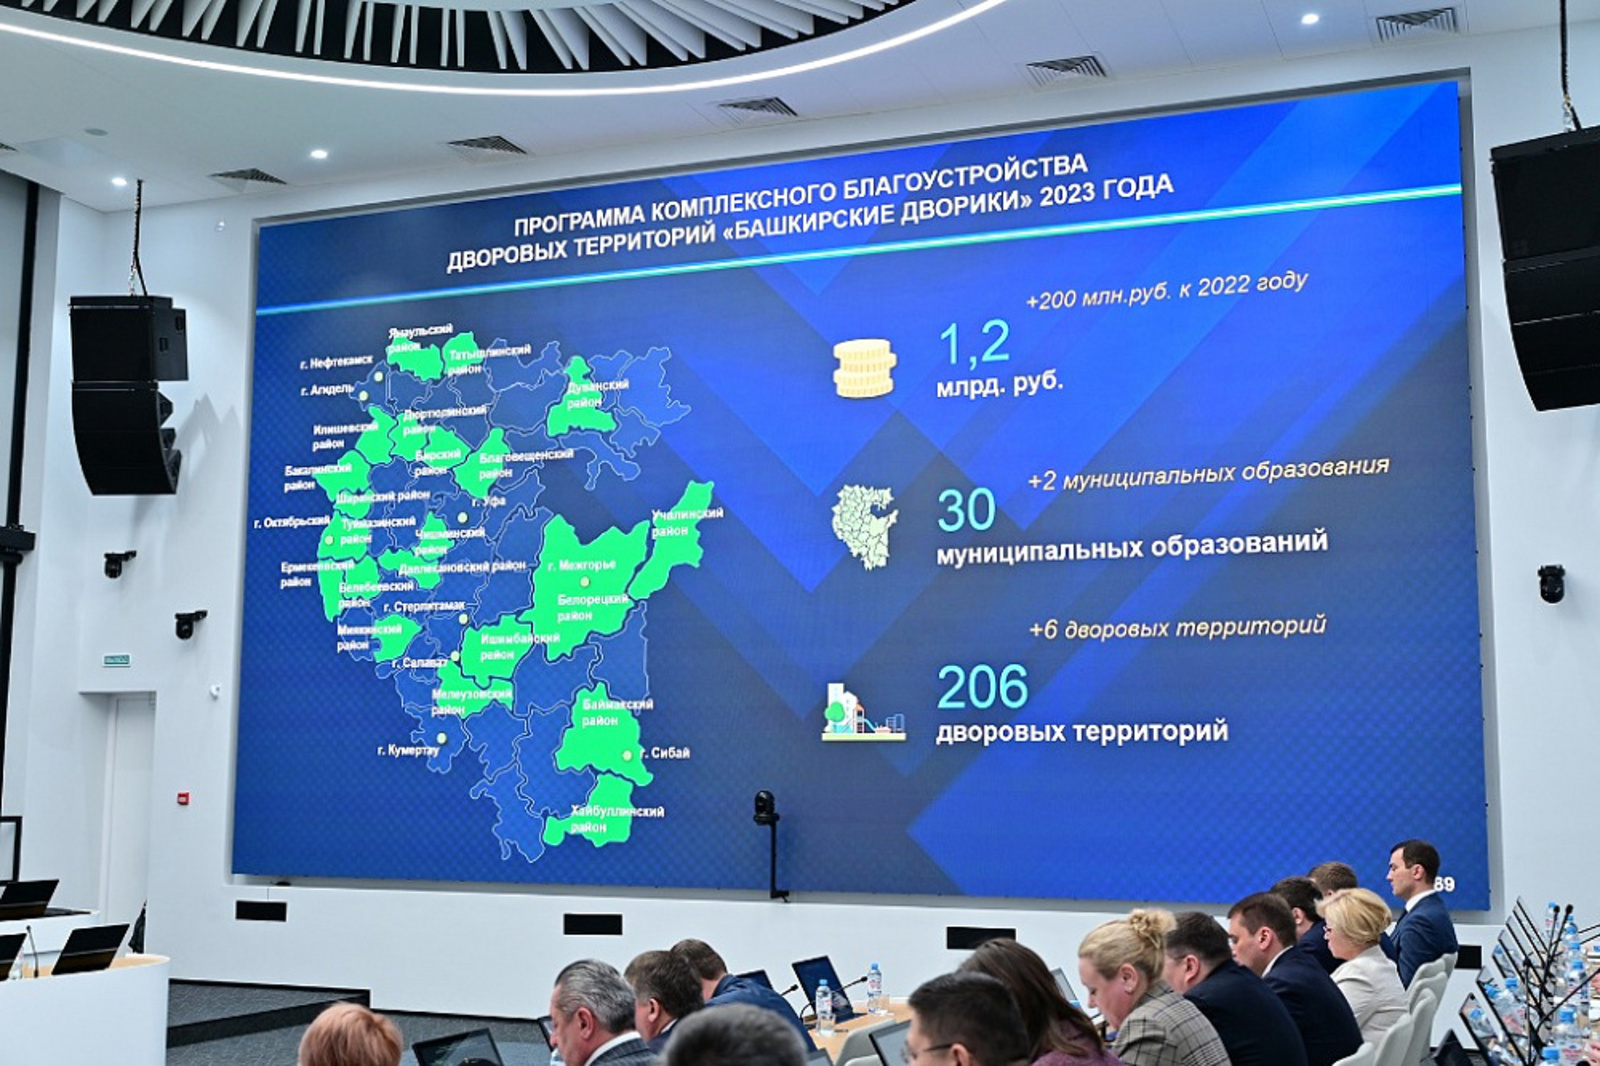 Бюджет программы «Башкирские дворики» в 2023 году увеличили на 200 млн рублей